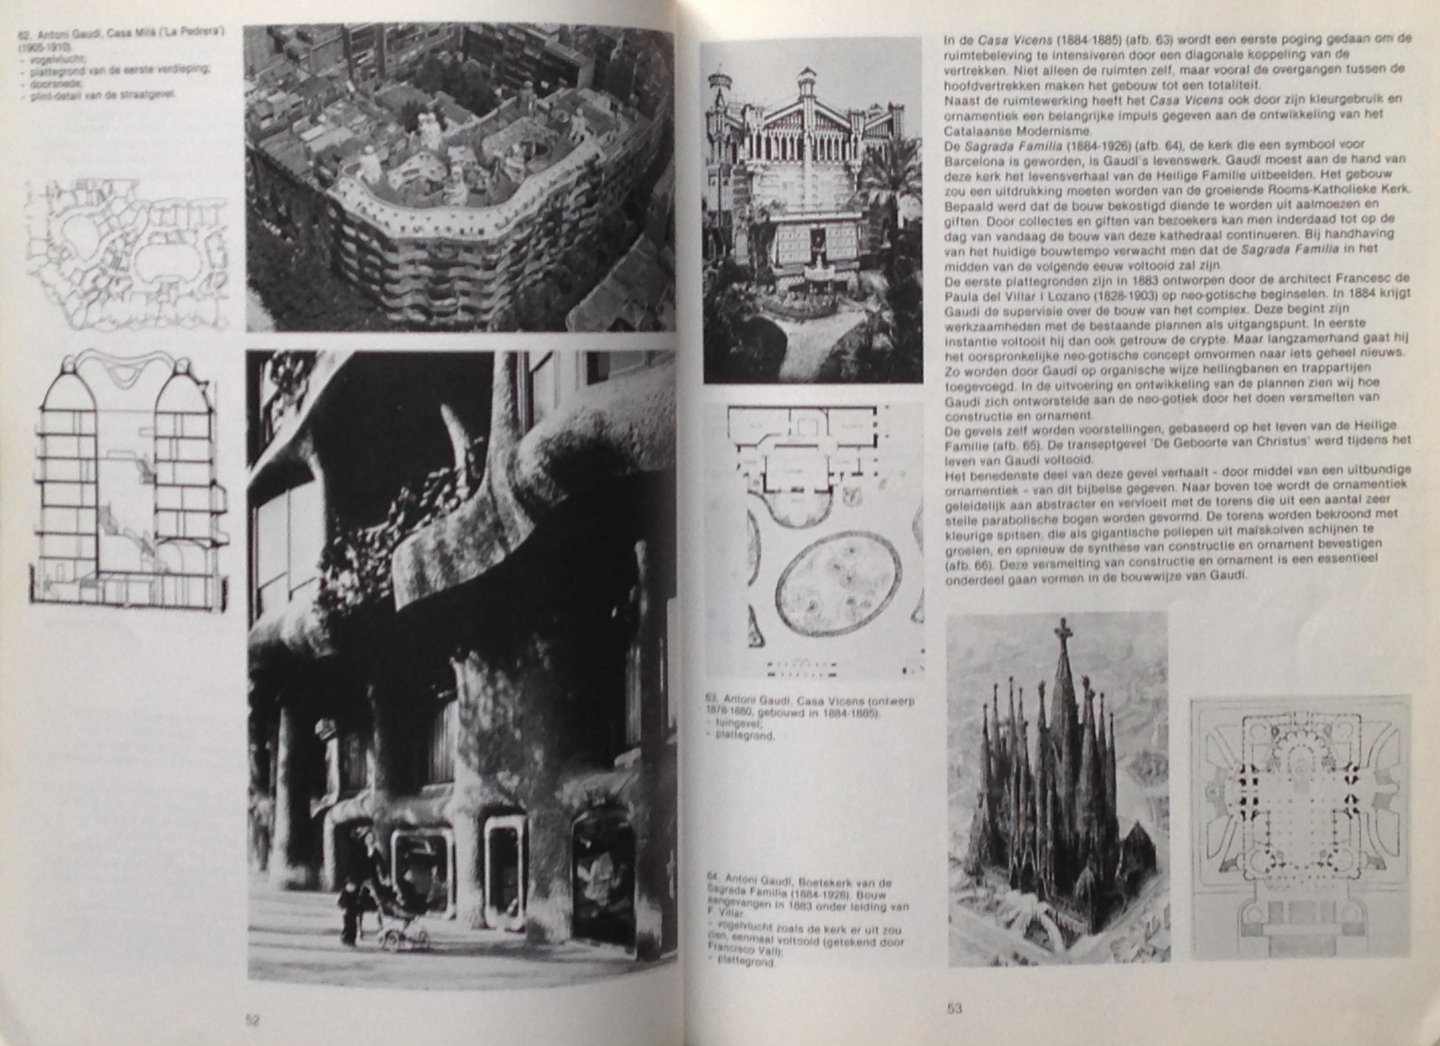 Ven, Cornelis van de - Bouwen in Barcelona - Een inleiding in de moderne architectuur en stedenbouw van Barcelona vanaf de Renaixenca - With an English Summary